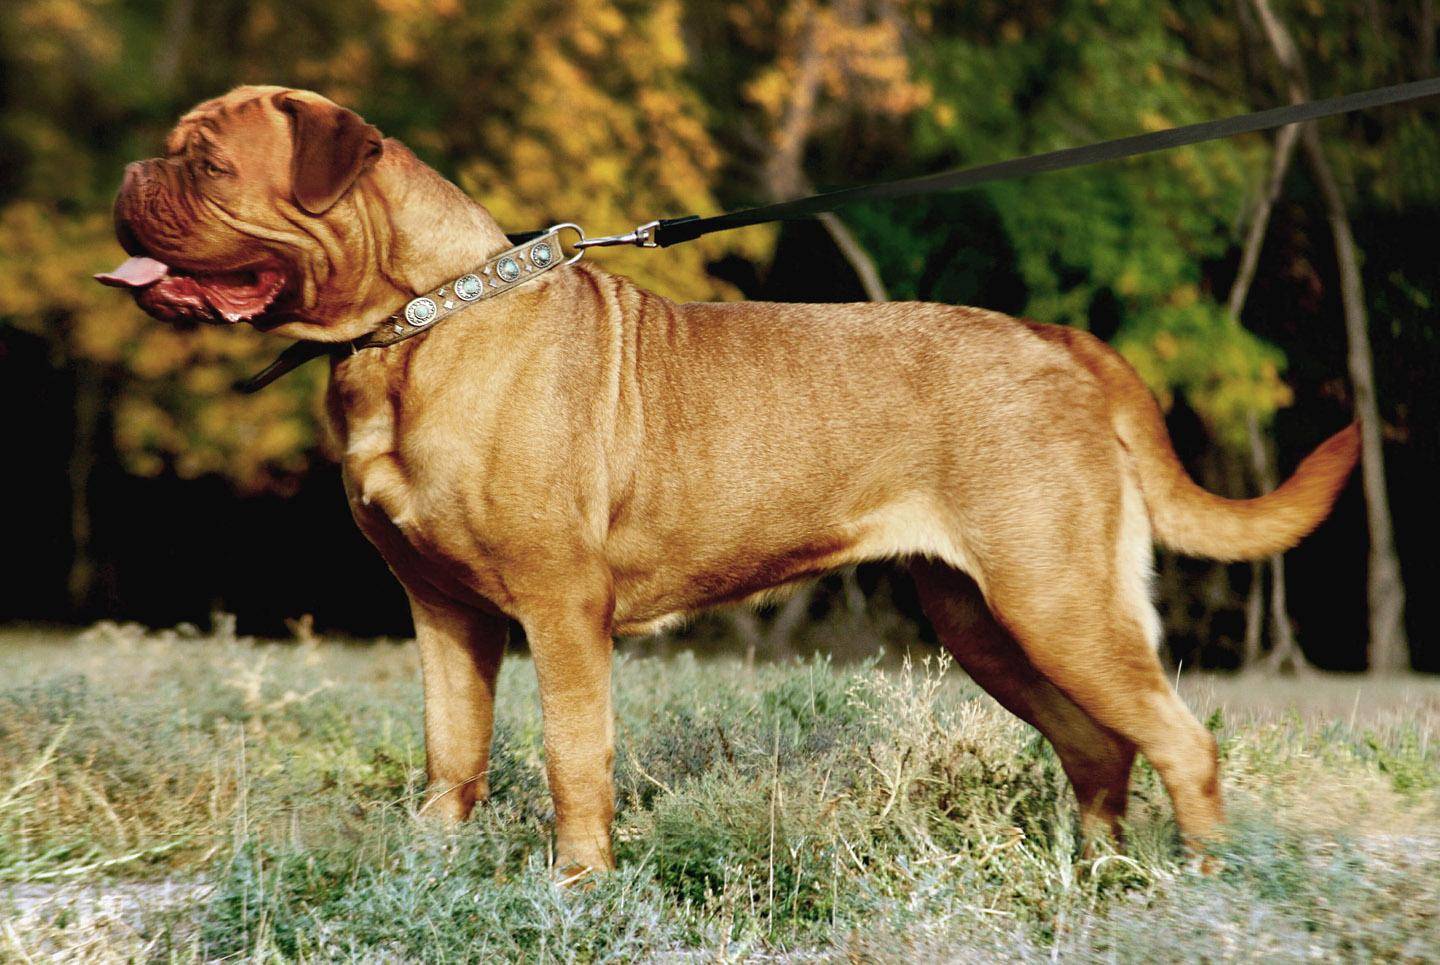 Бордосский дог - фото собаки, описание породы, характер, цена щенка